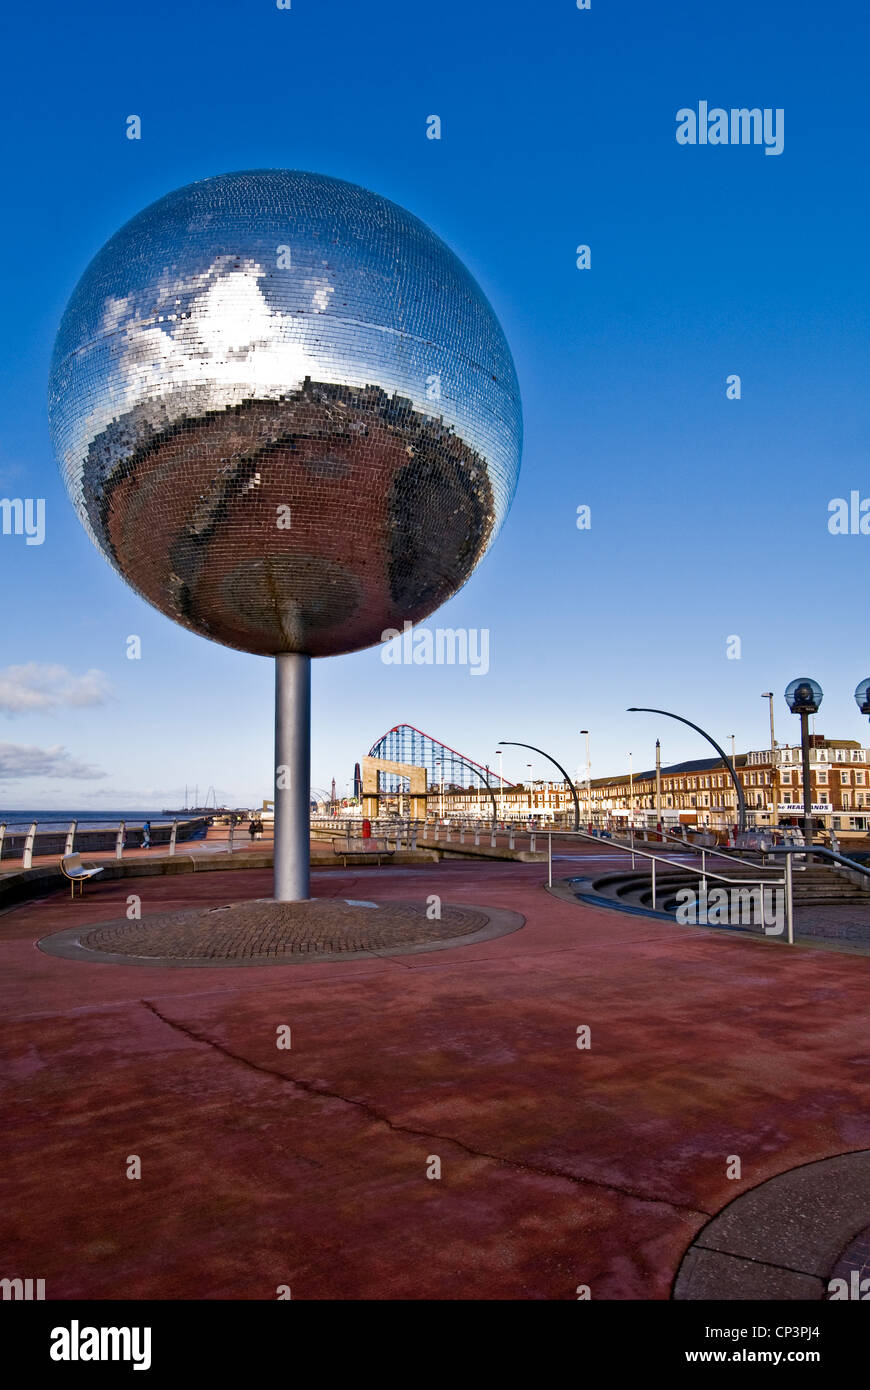 La boule miroir 'ils abattent les chevaux, n'est-ce pas' à Pleasure Beach Blackpool, Lancashire, England, UK Banque D'Images